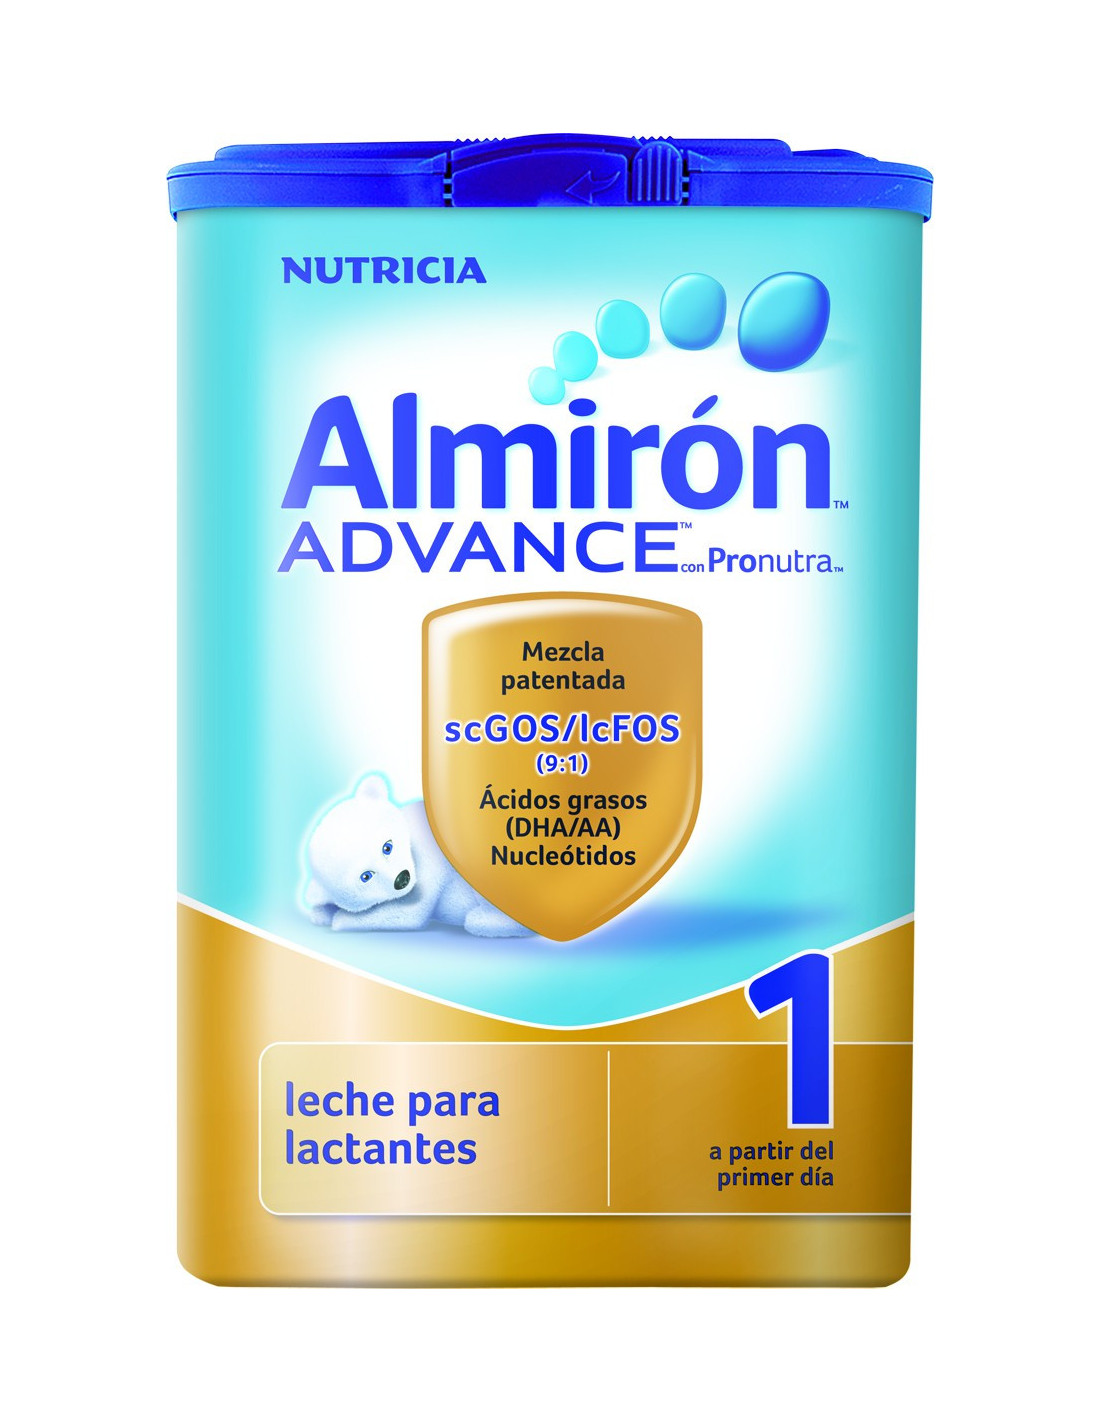 Almirón Advance 1 - Almirón